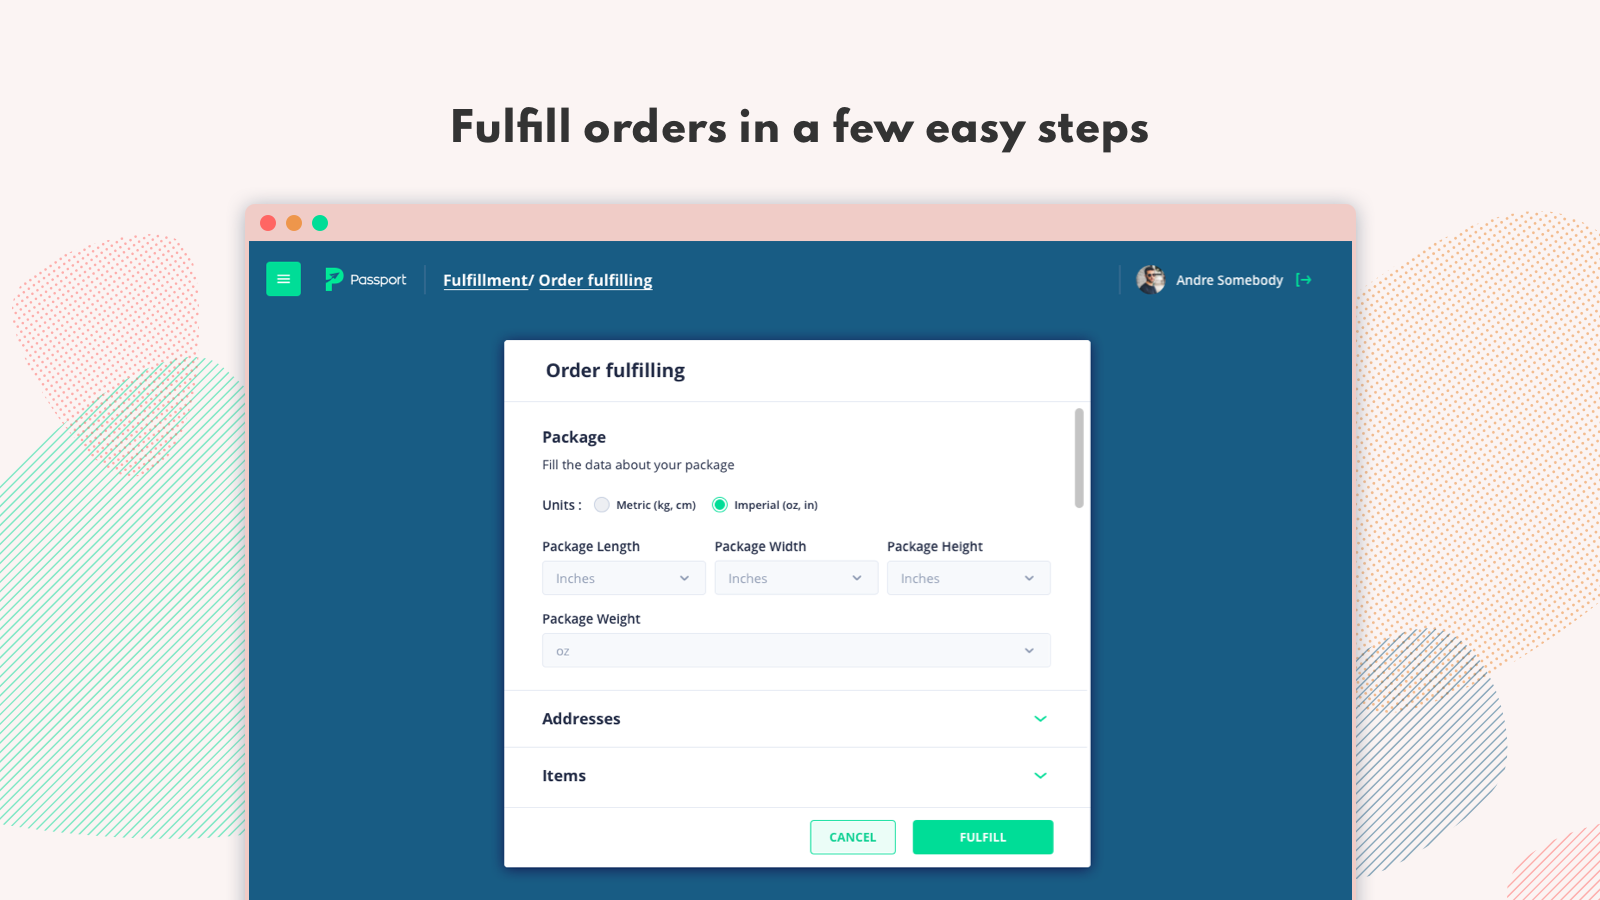 Fulfill orders in a few easy steps